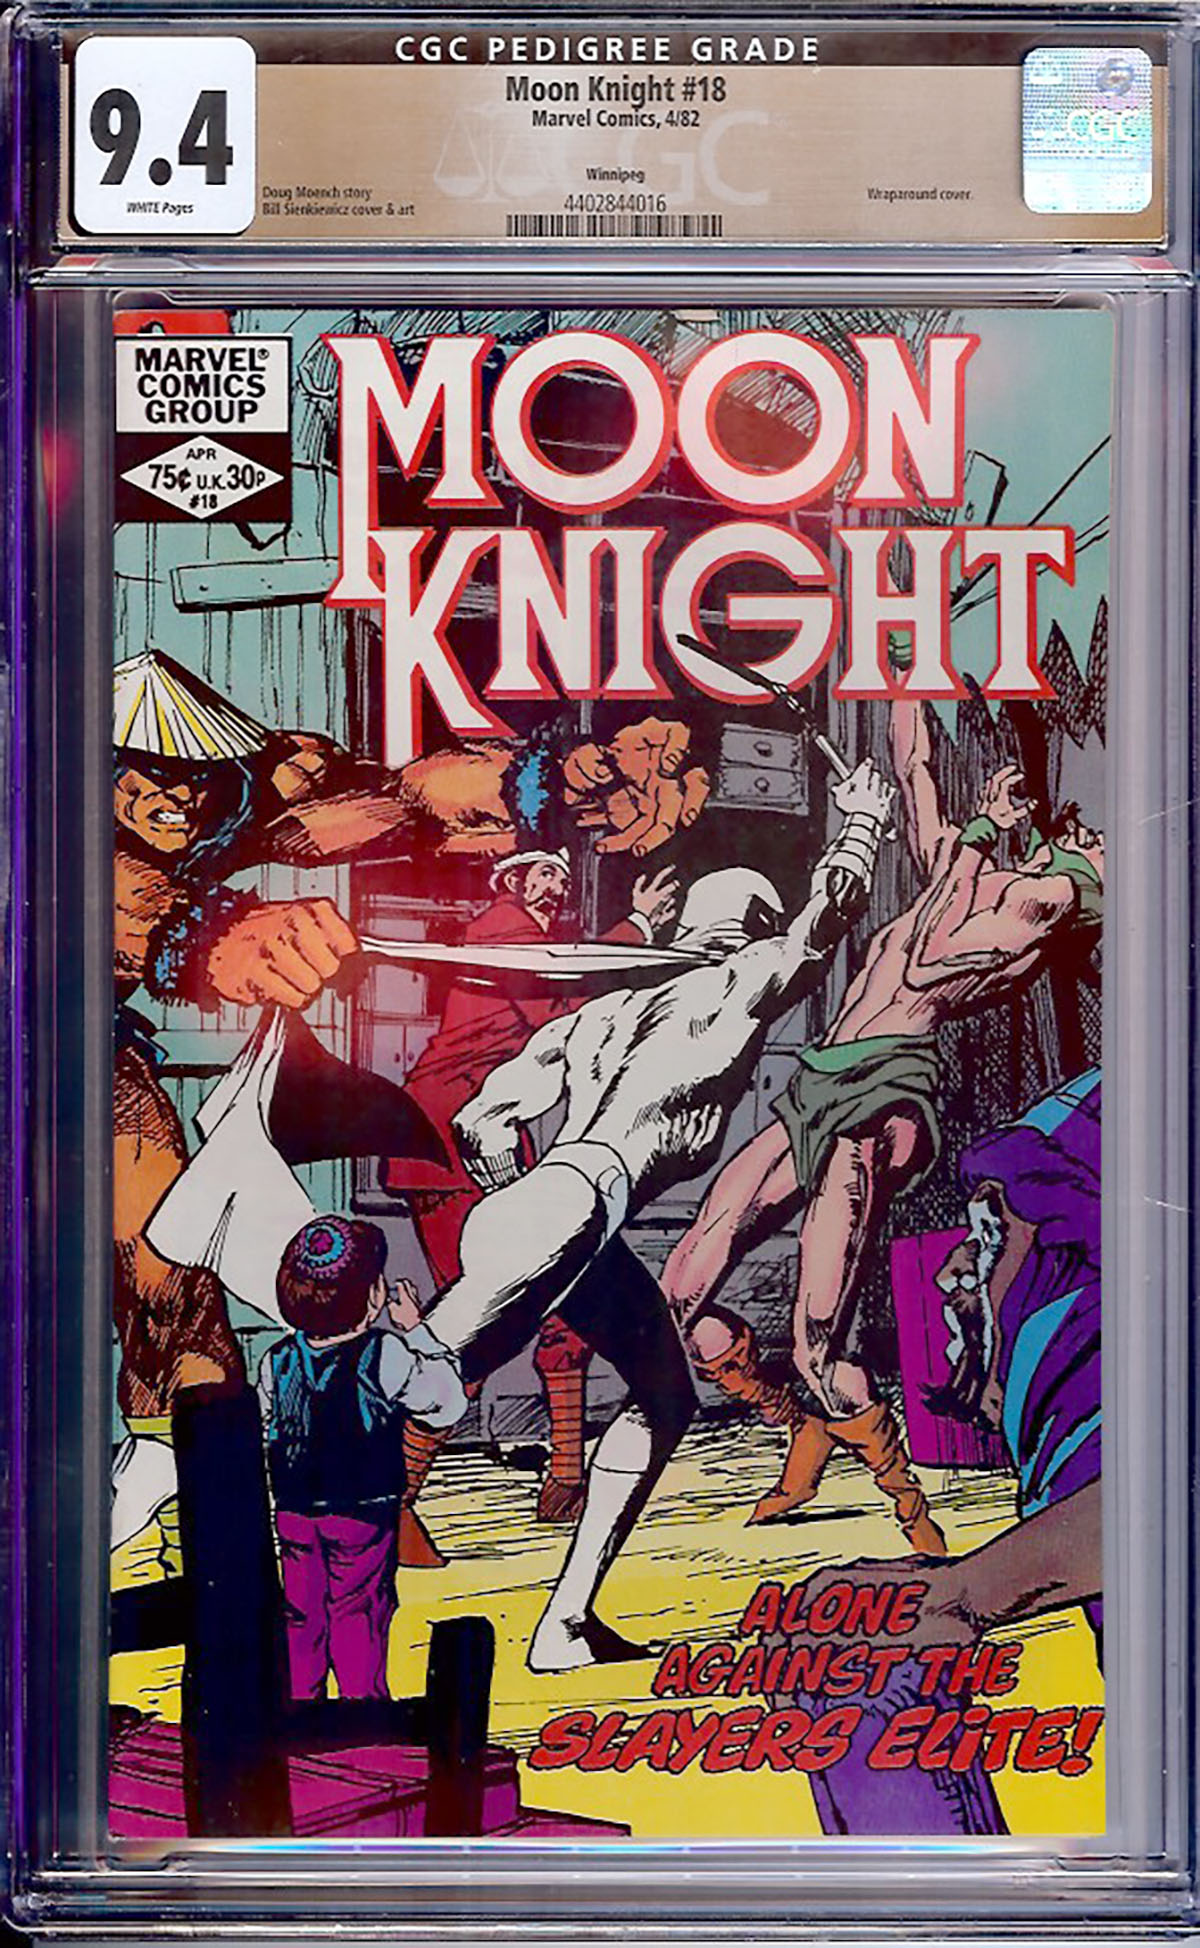 Moon Knight #18 CGC 9.4 w Winnipeg